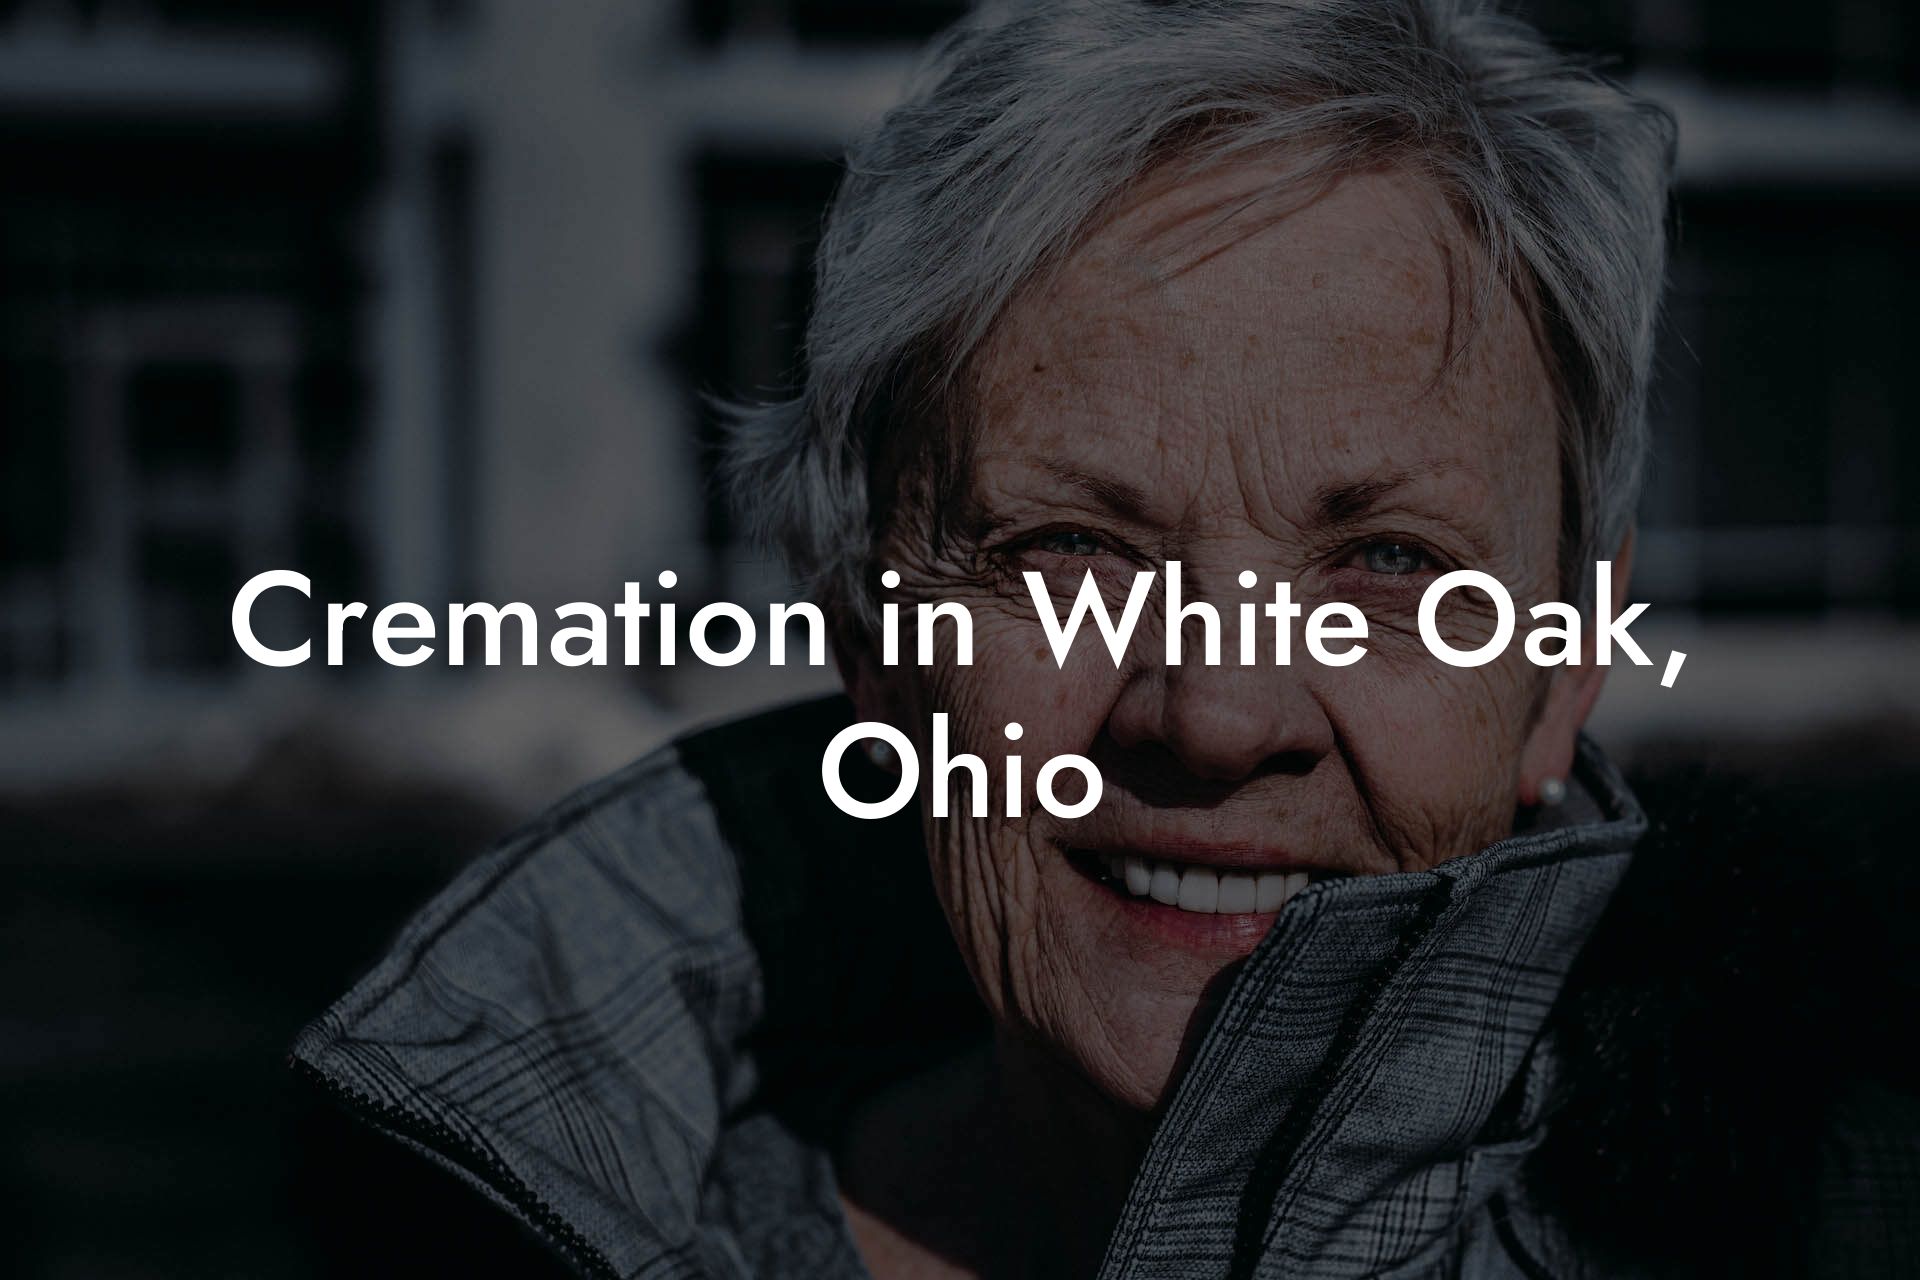 Cremation in White Oak, Ohio